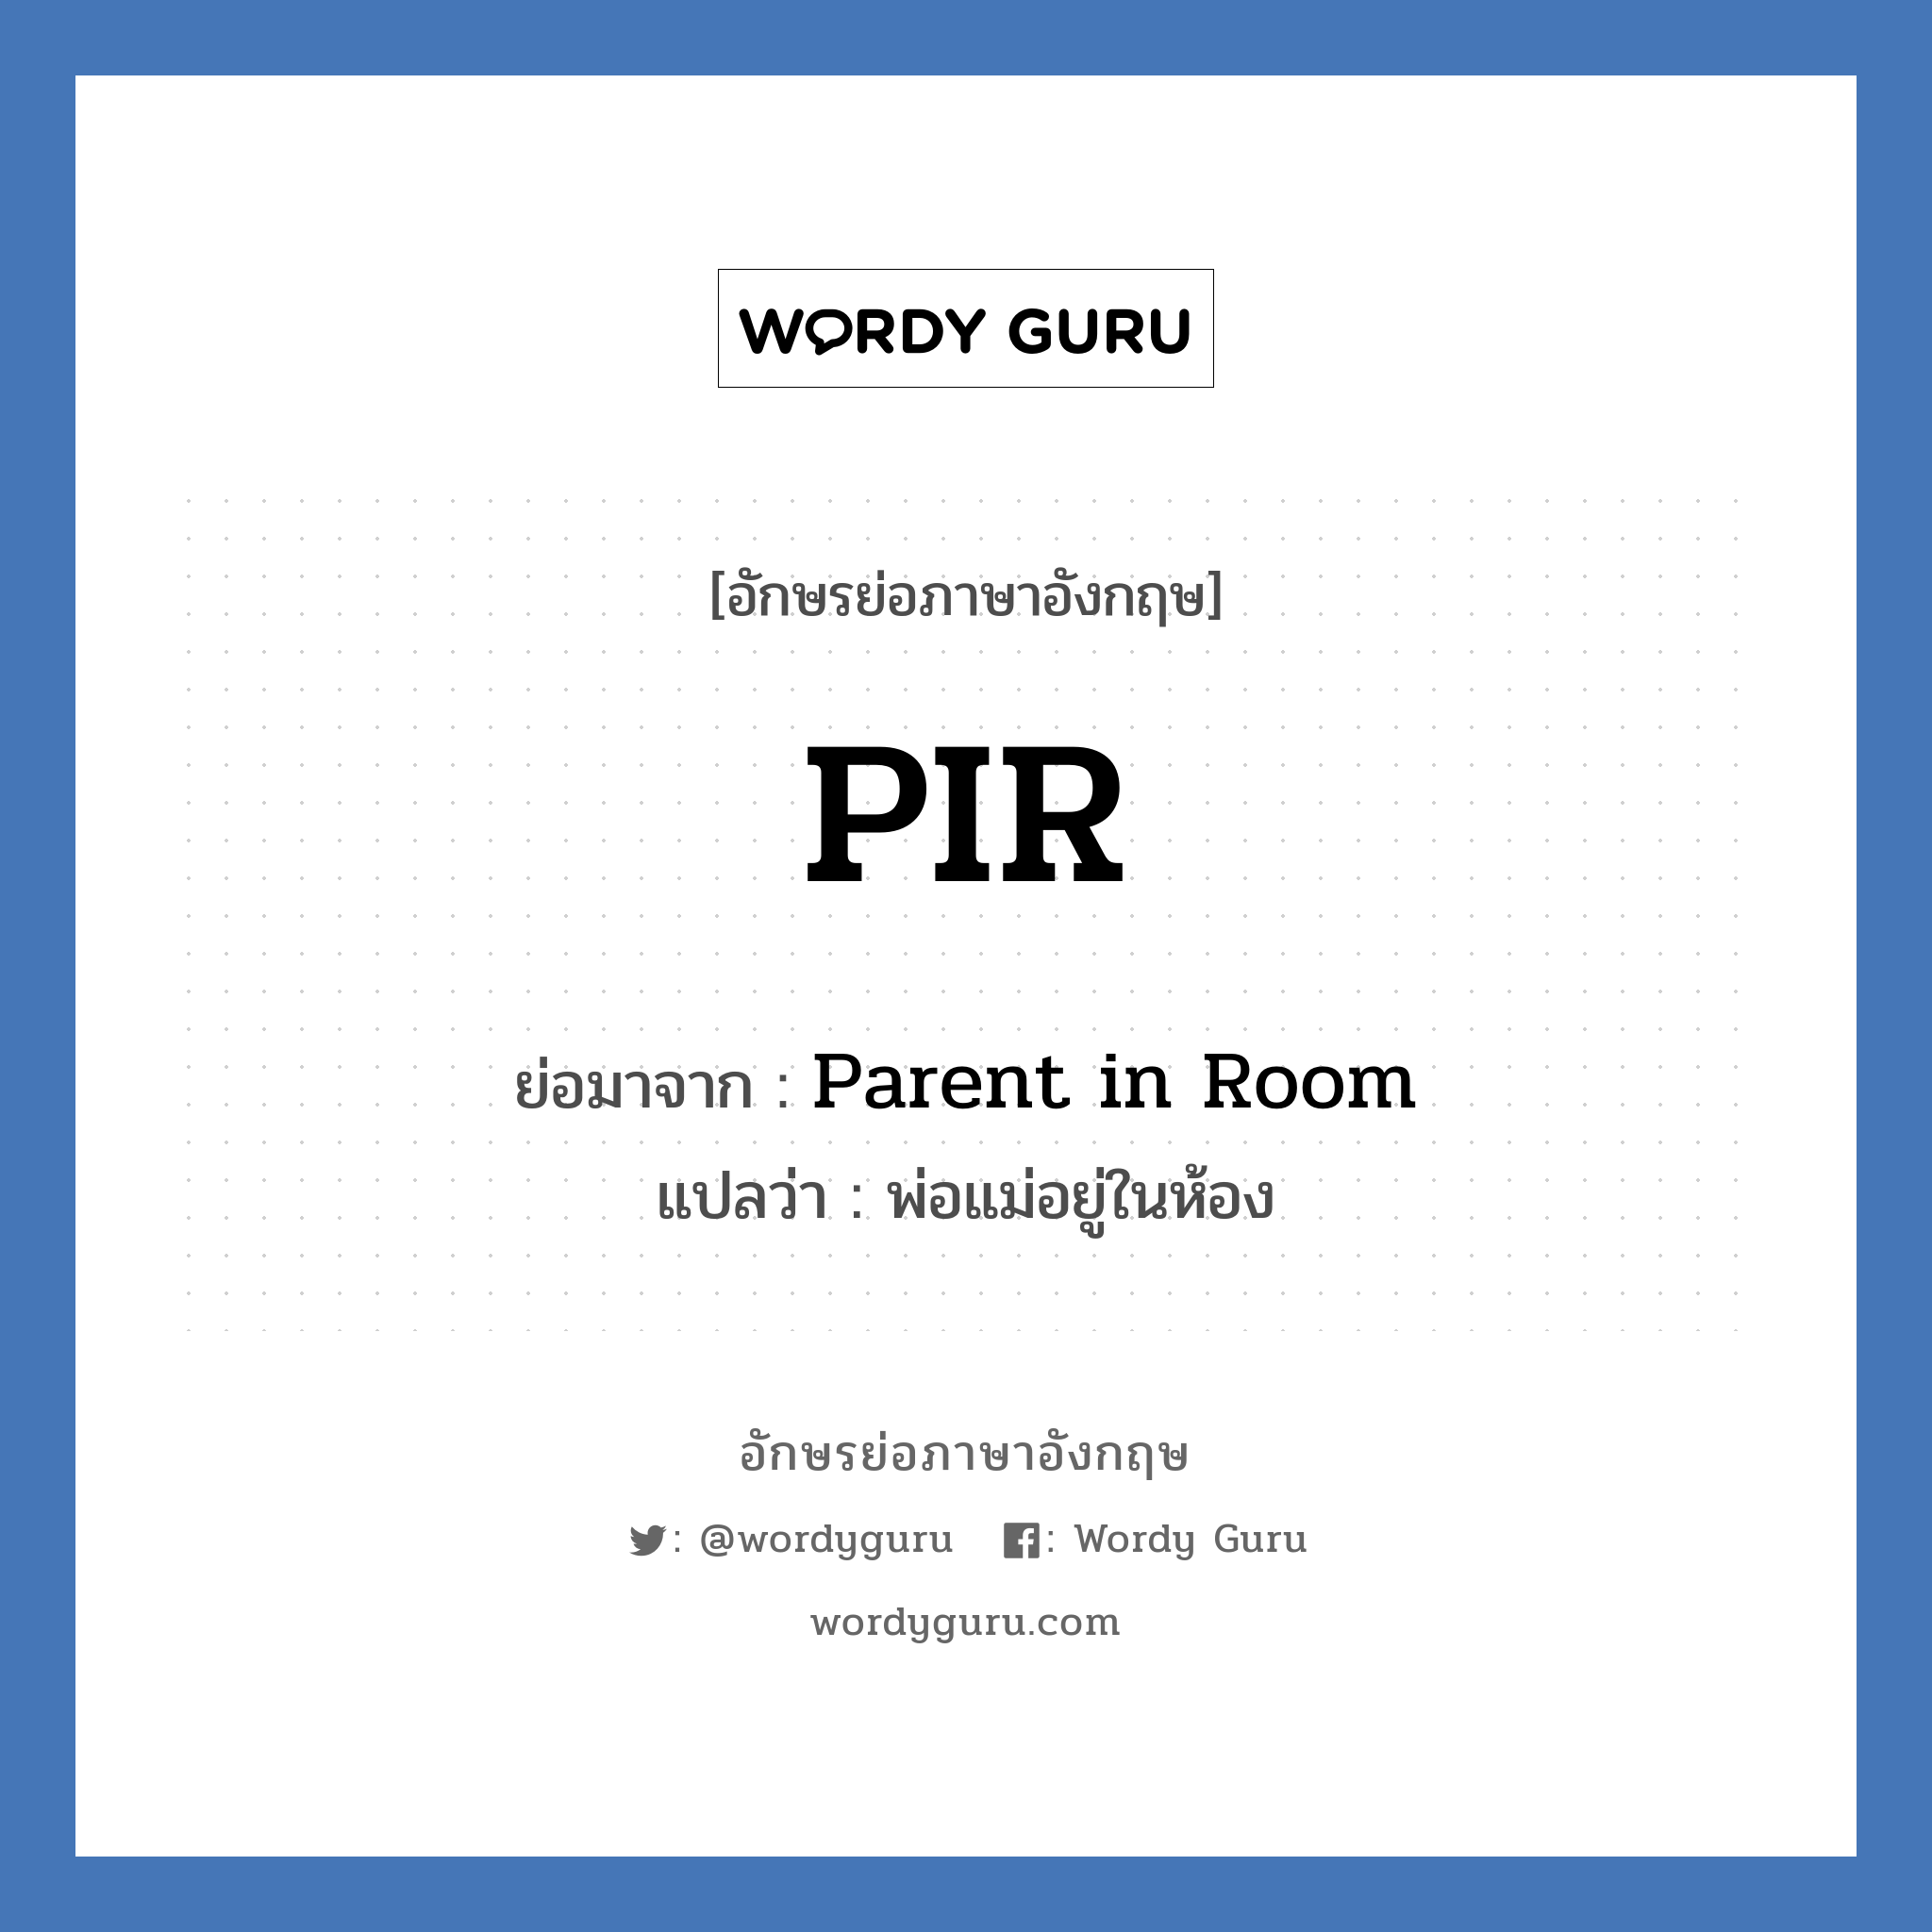 Parent in Room คำย่อคือ? แปลว่า?, อักษรย่อภาษาอังกฤษ Parent in Room ย่อมาจาก PIR แปลว่า พ่อแม่อยู่ในห้อง